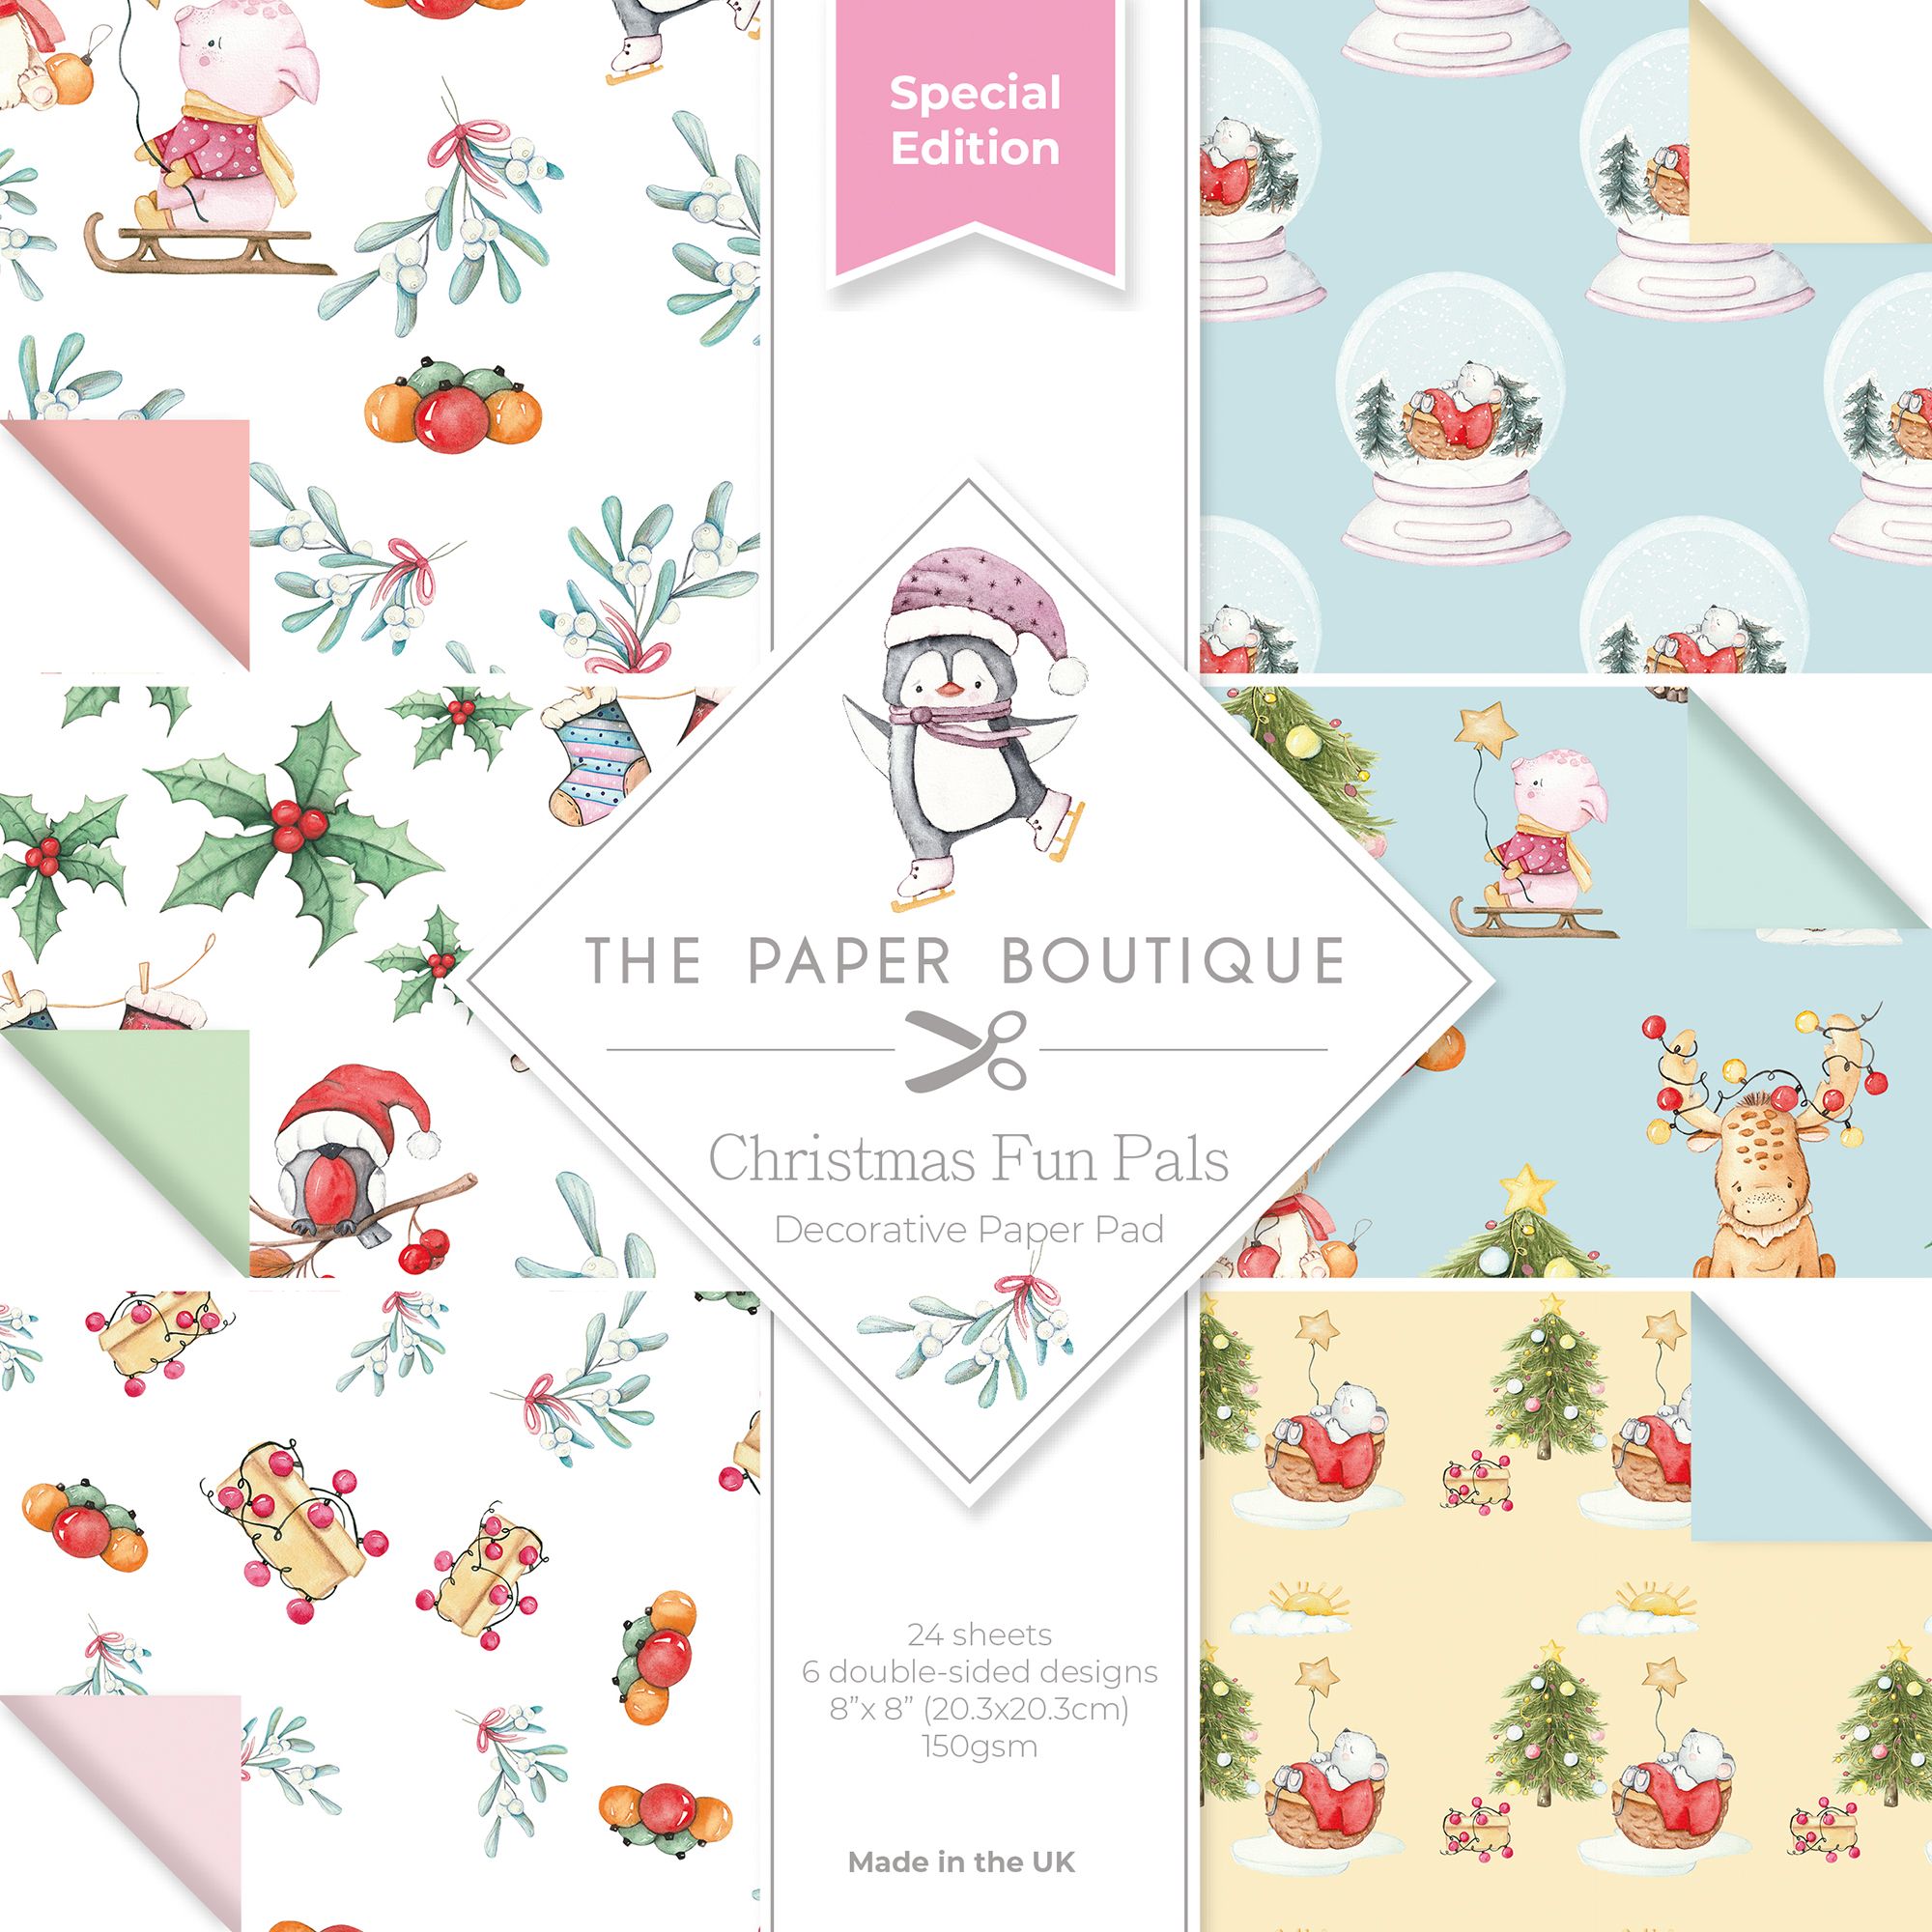 The Paper Boutique • Christmas Fun Pals Decorative Paper Pad 20,3x20,3cm